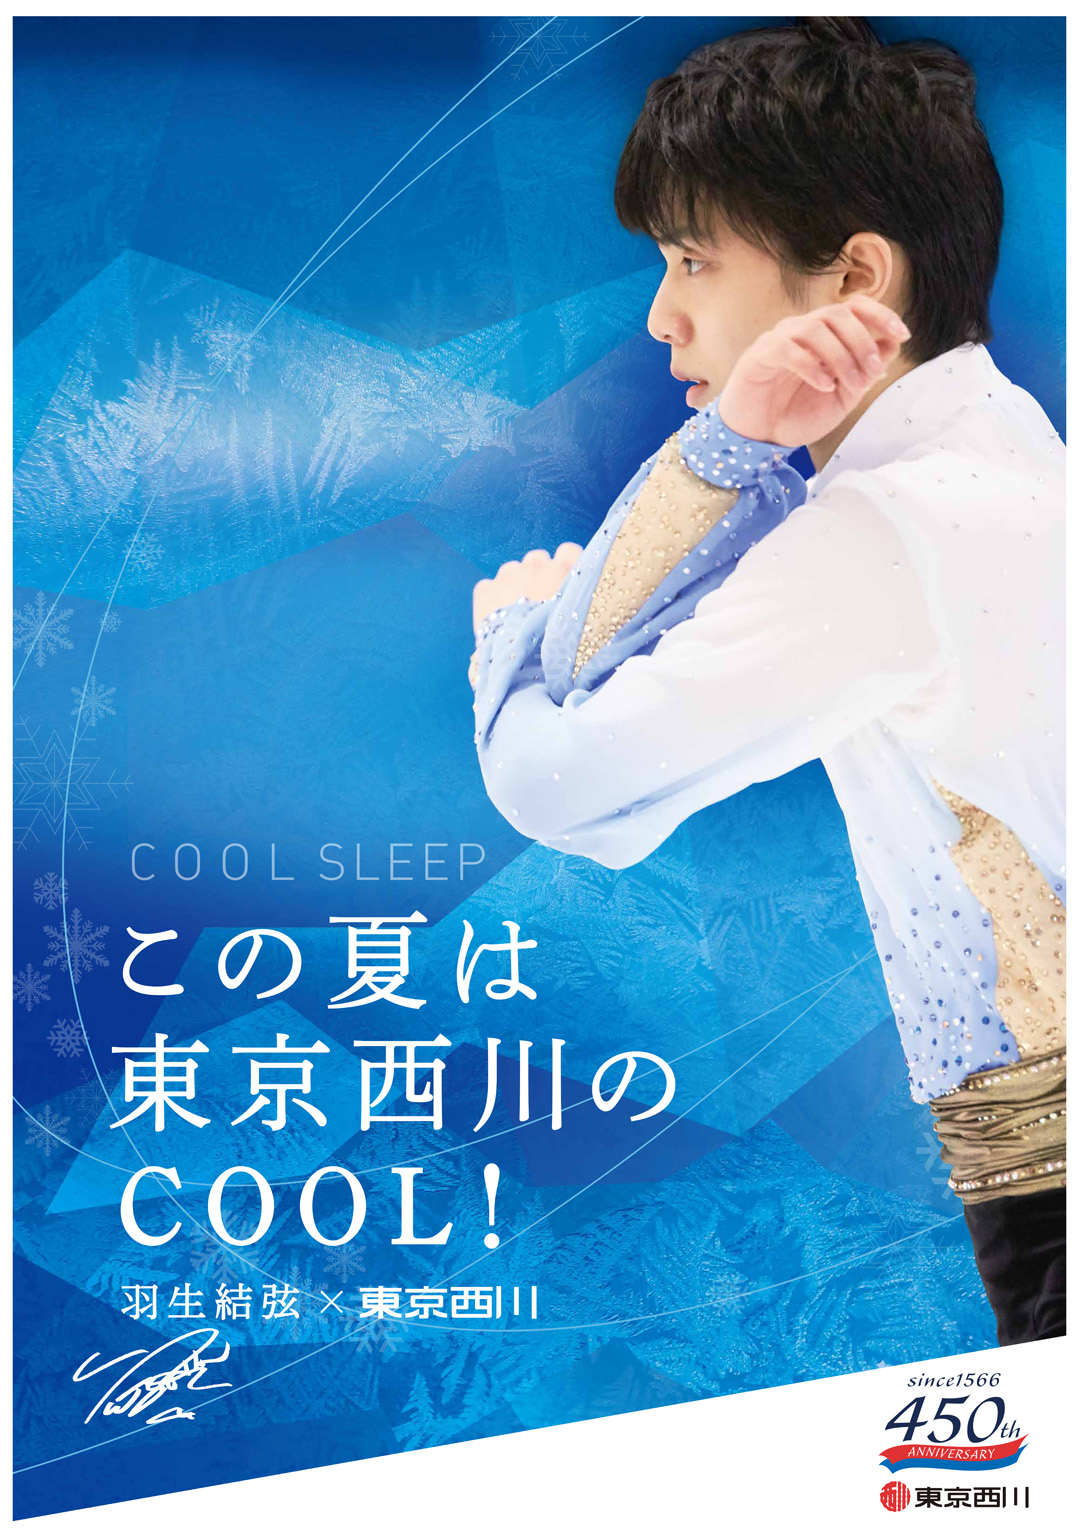 羽生結弦選手を起用した『東京西川 COOL SLEEP キャンペーン』を6月1日